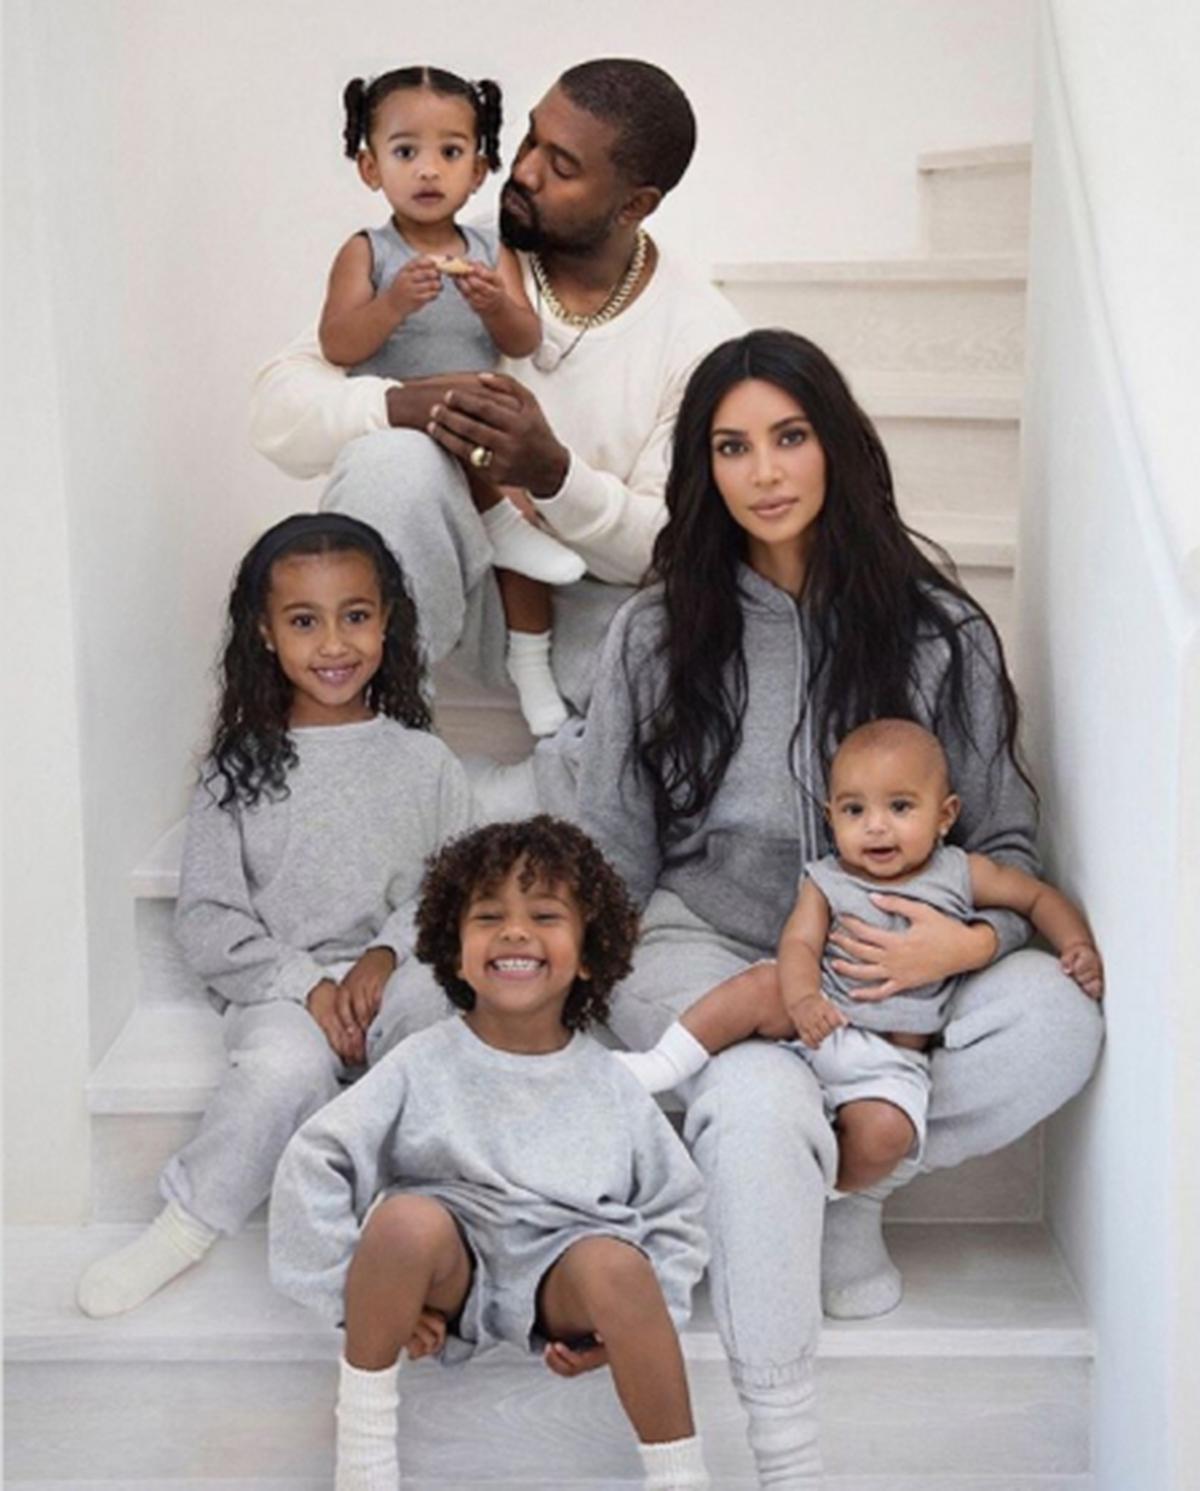  | Kanye y Kim cuando aún eran pareja, posando junto a sus hijos.
Fuente: Twitter @showmundialshow